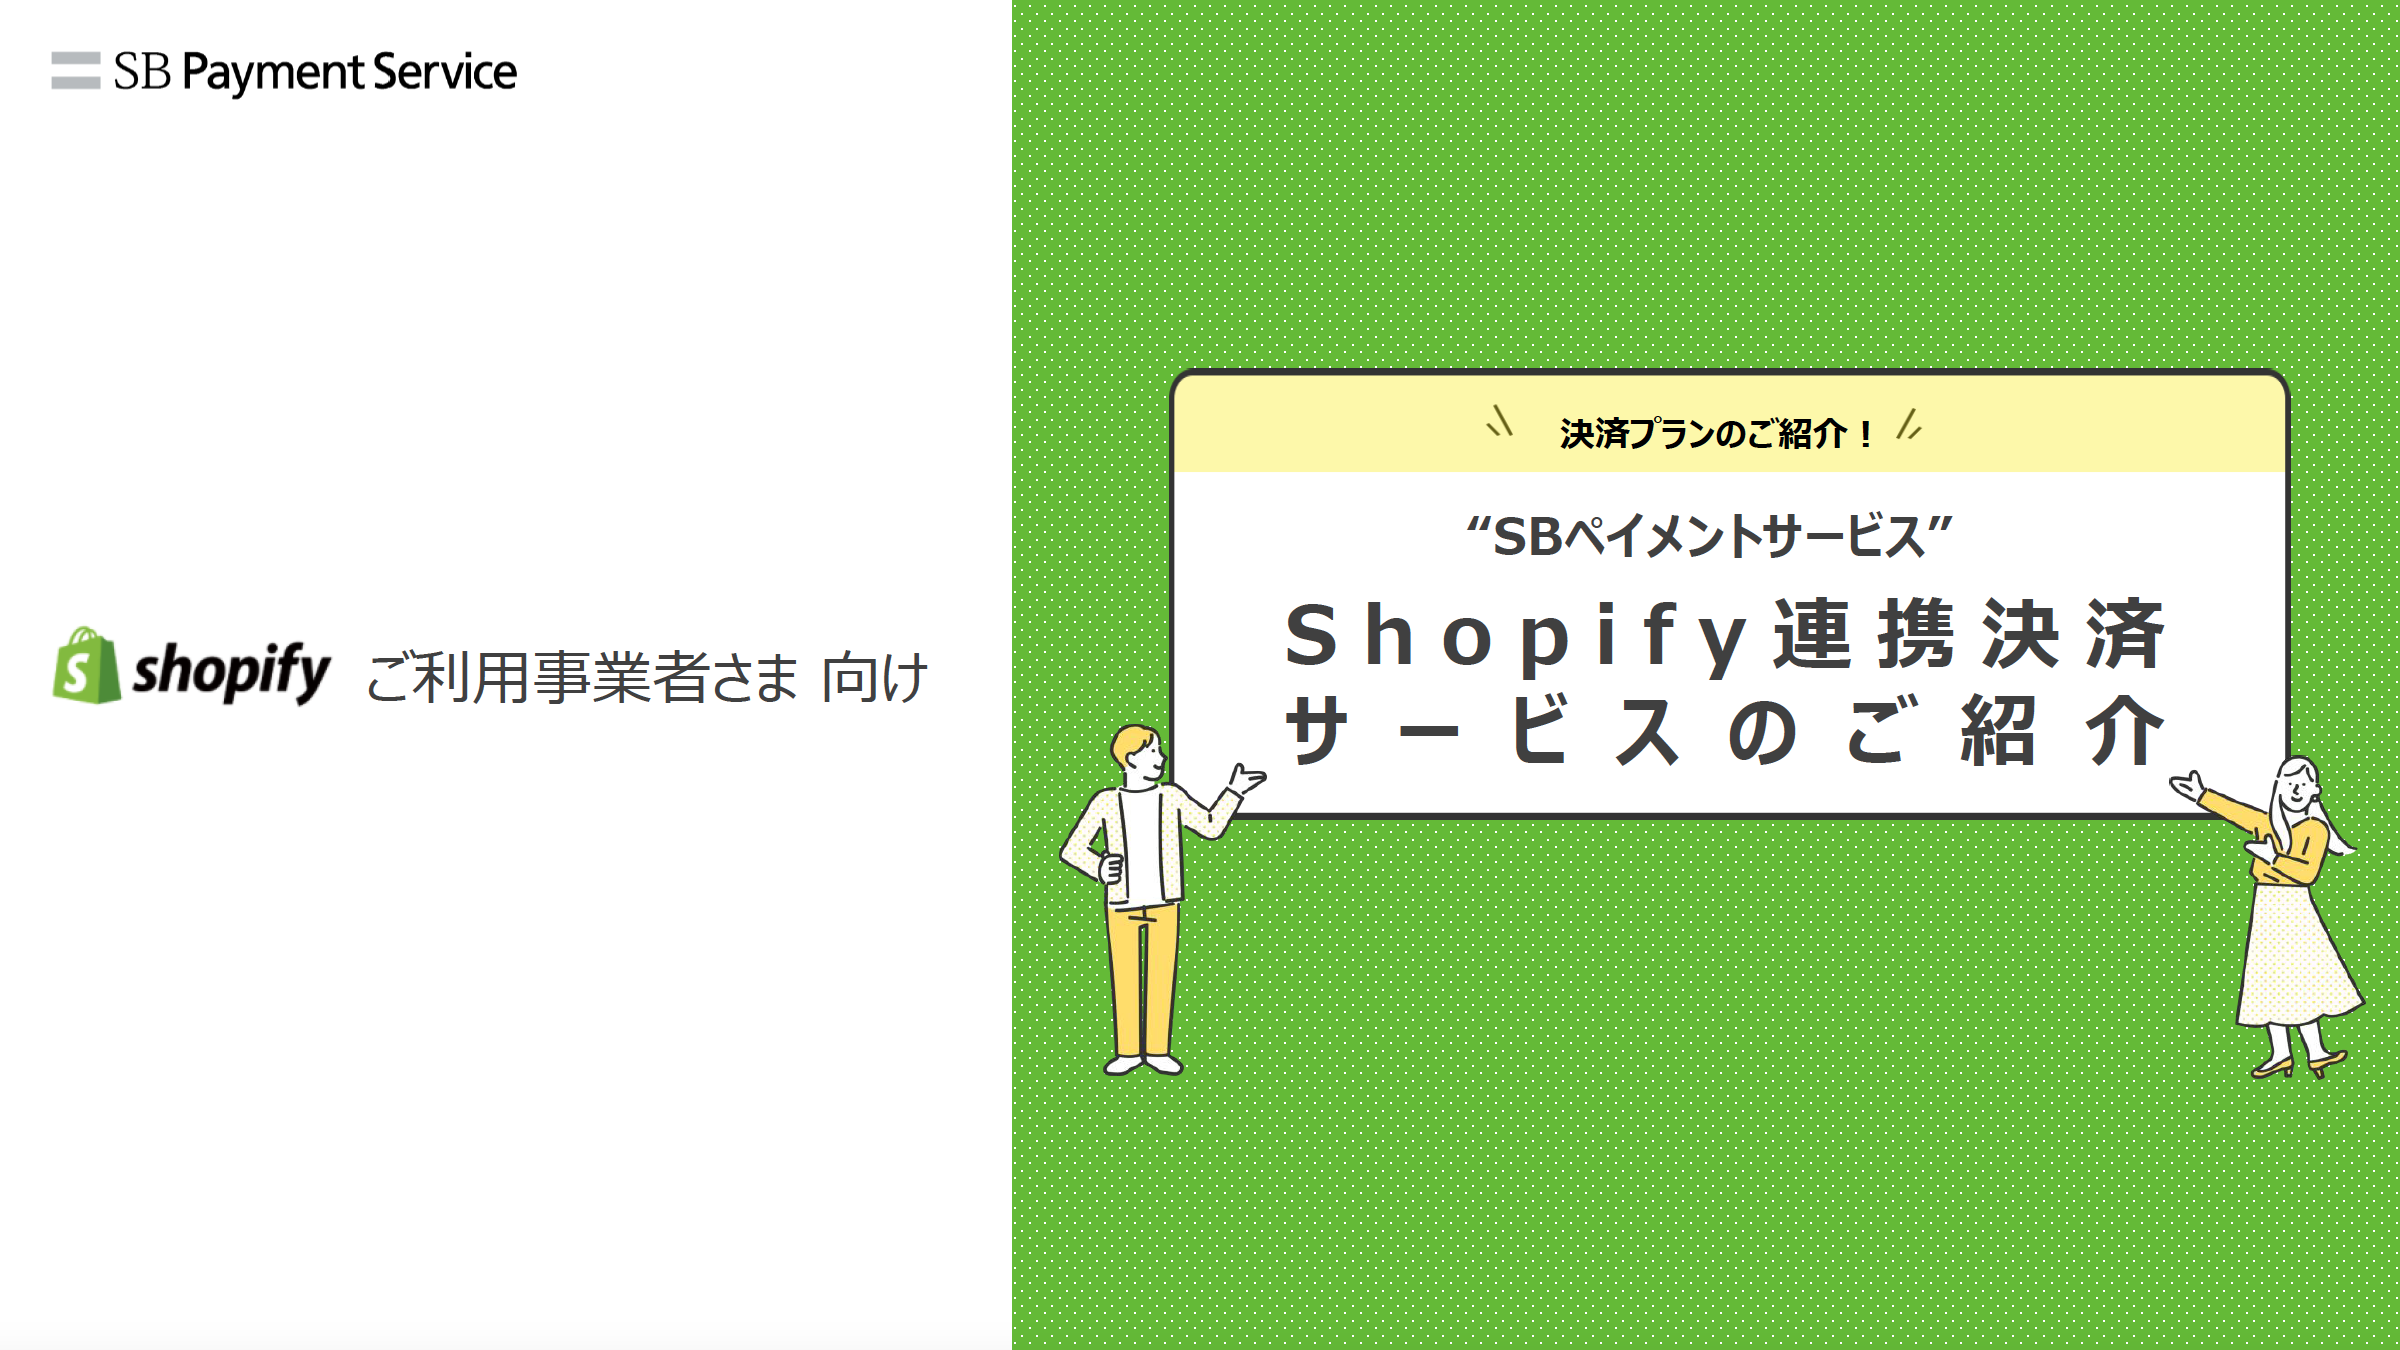 Shopify向けSBペイメントサービス資料